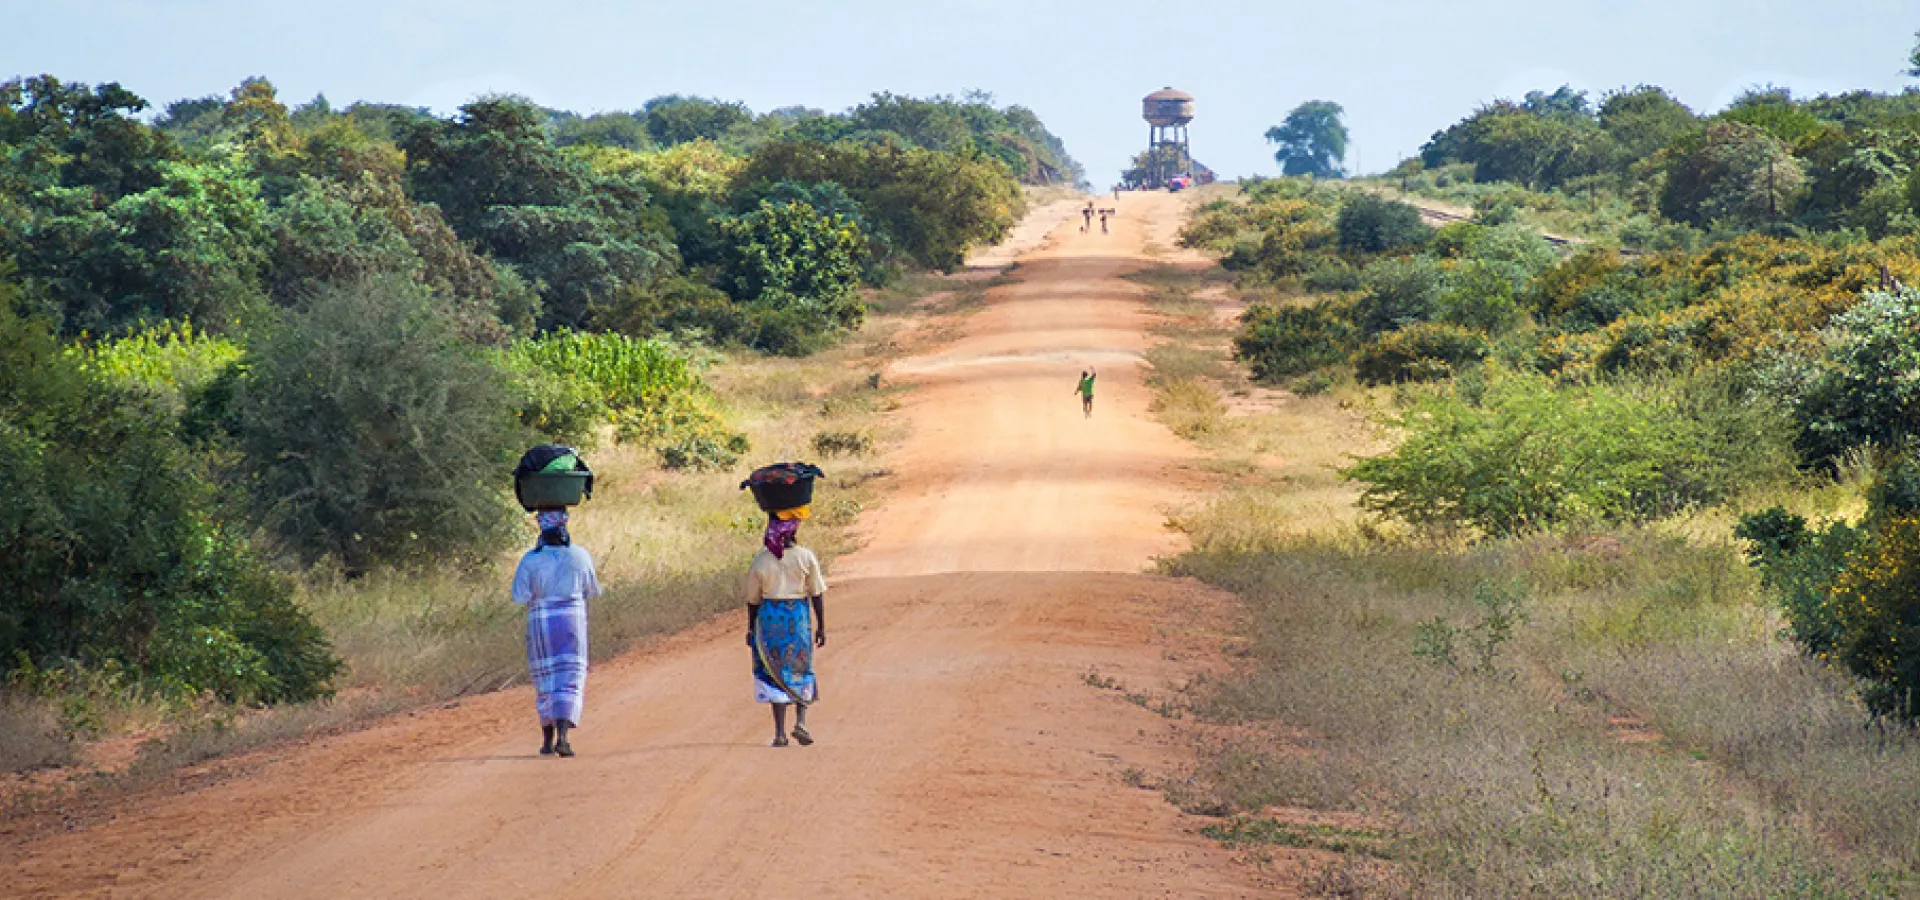 African women walking on a road